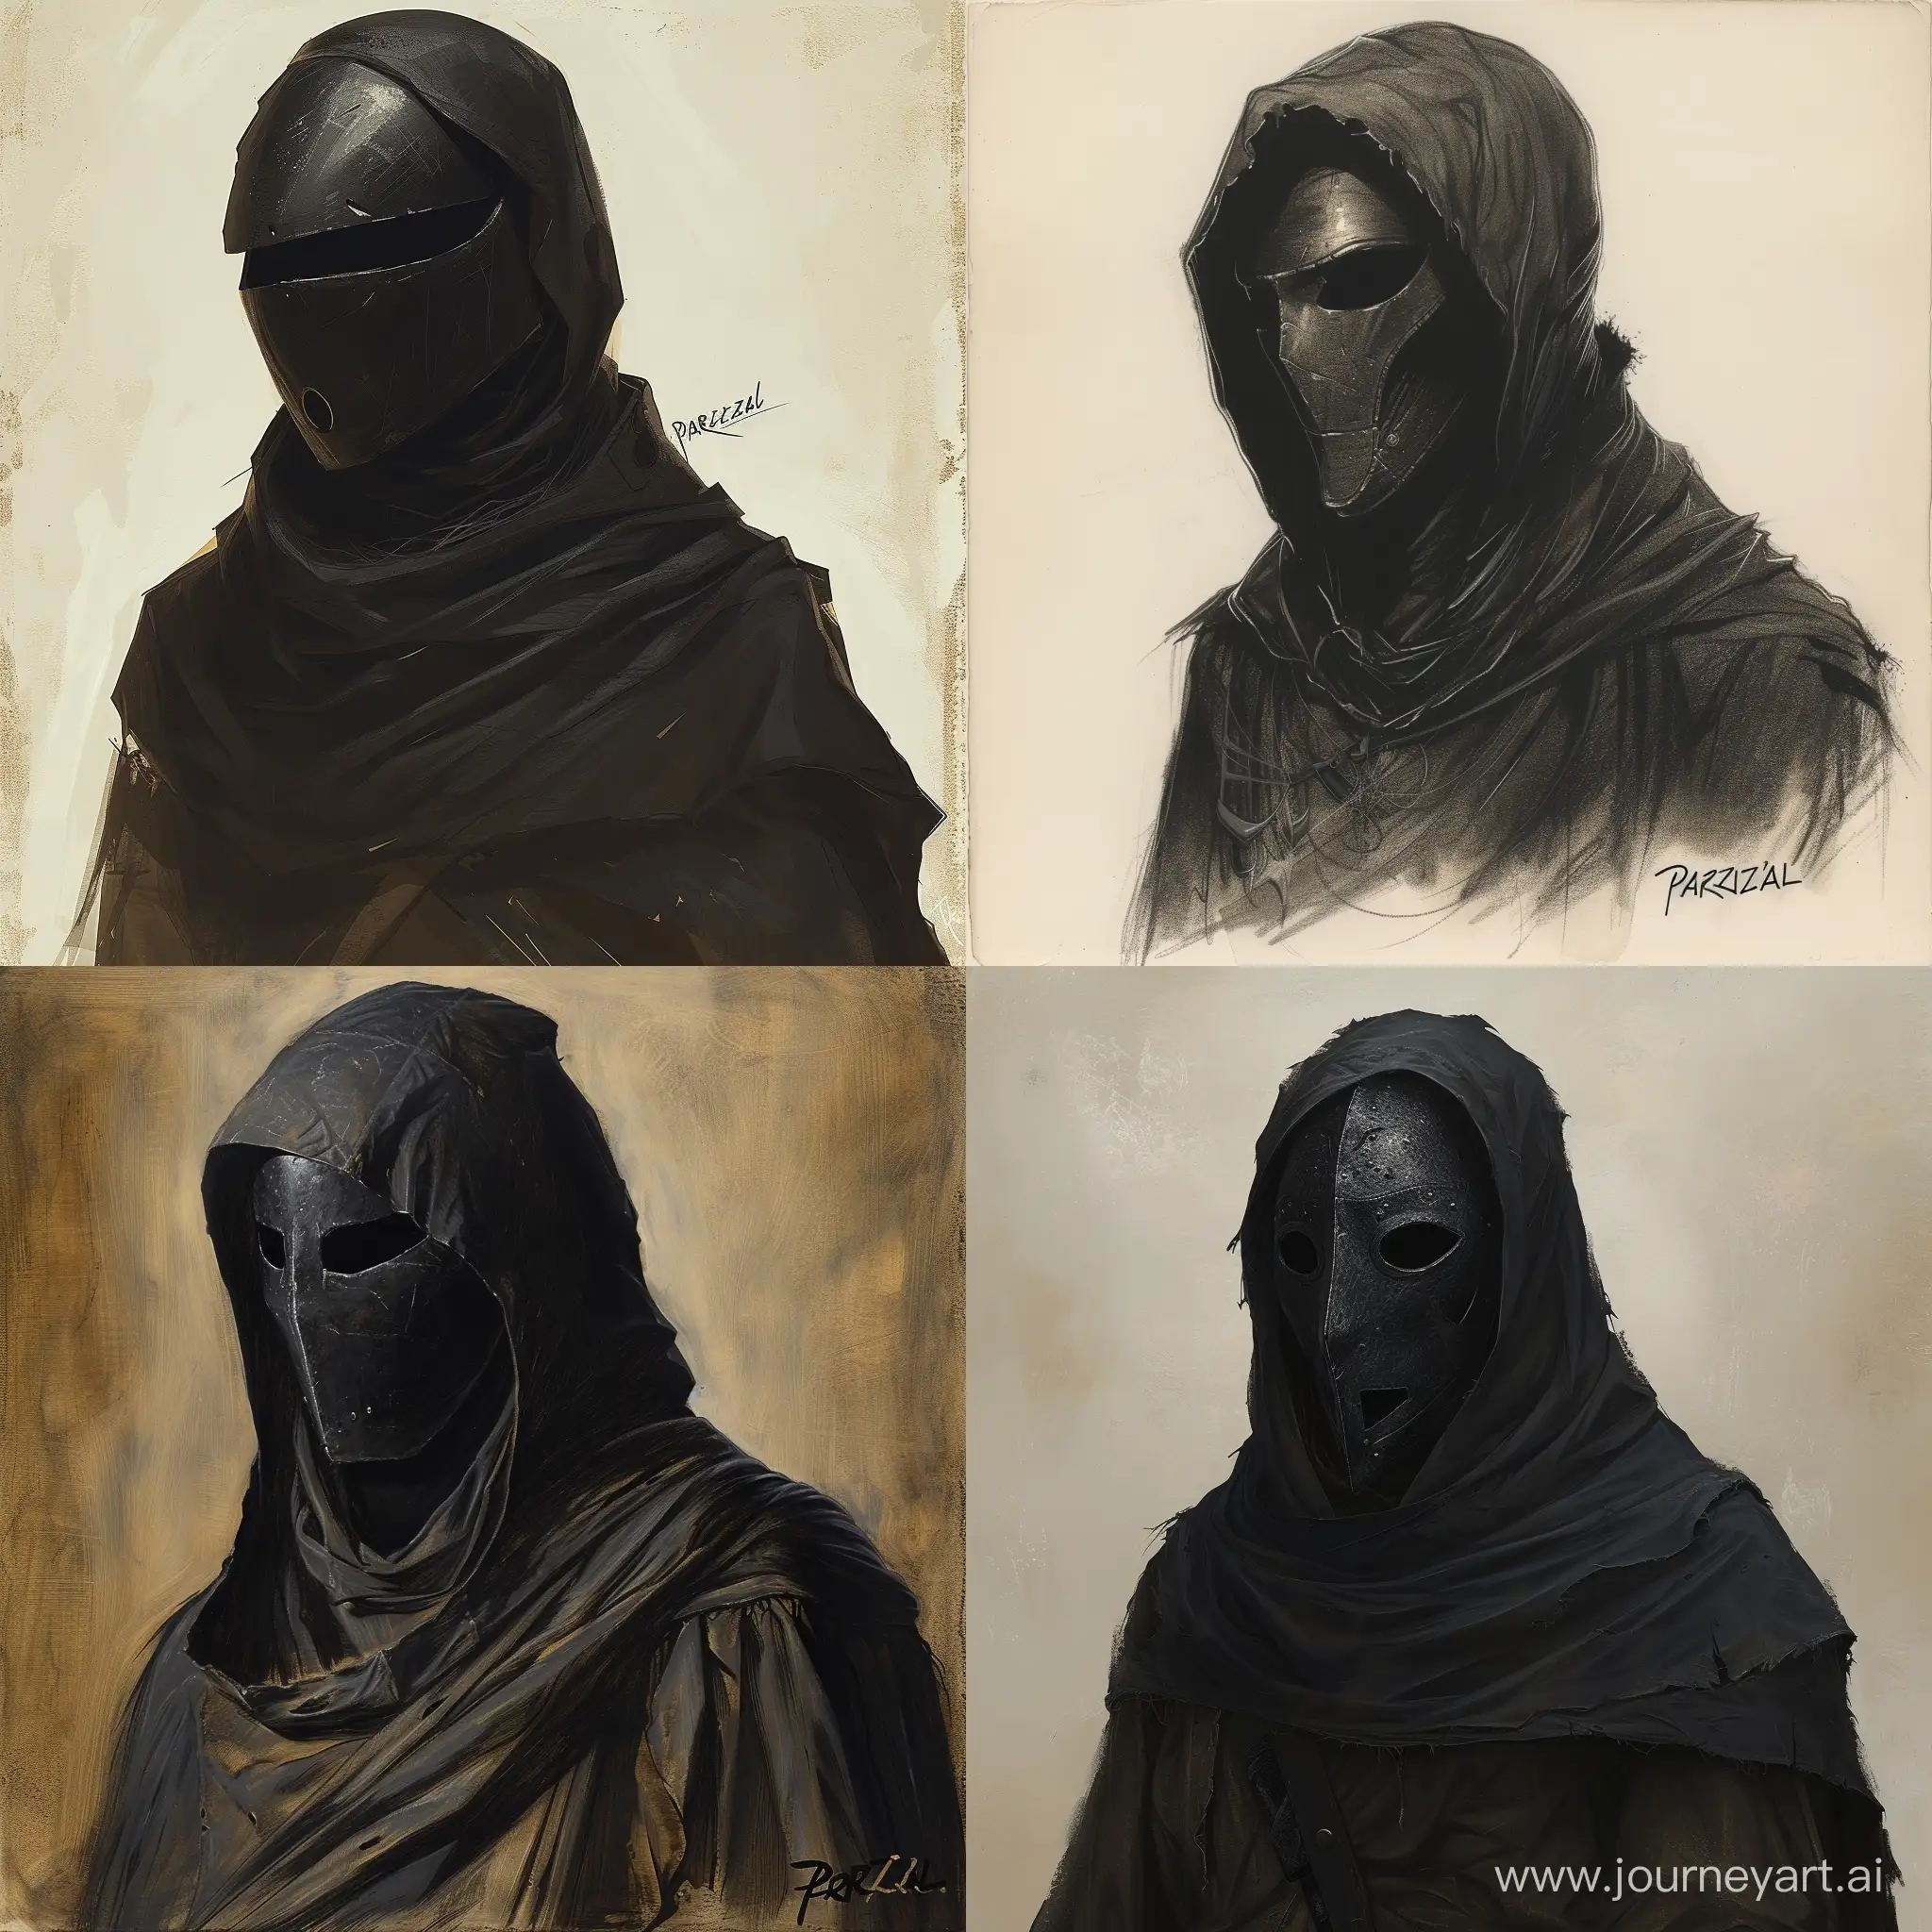 нарисуй солдата в железной маске и накрытым полностью черной мантией видно толкьо черную маску, и написано чтобы было Parvizal